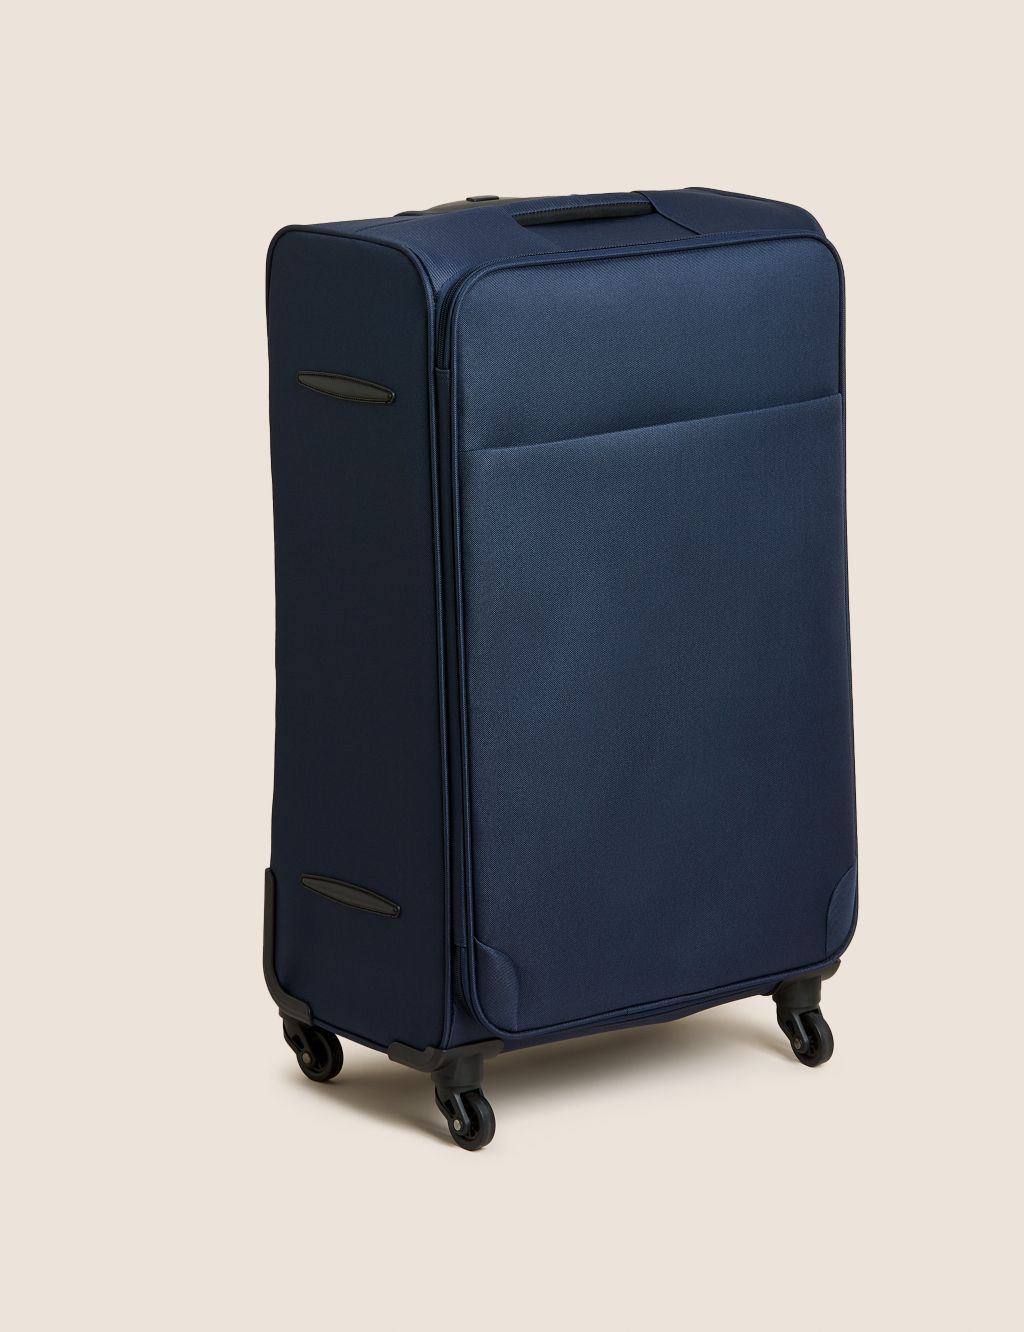 Palma 4 Wheel Soft Large Suitcase image 1